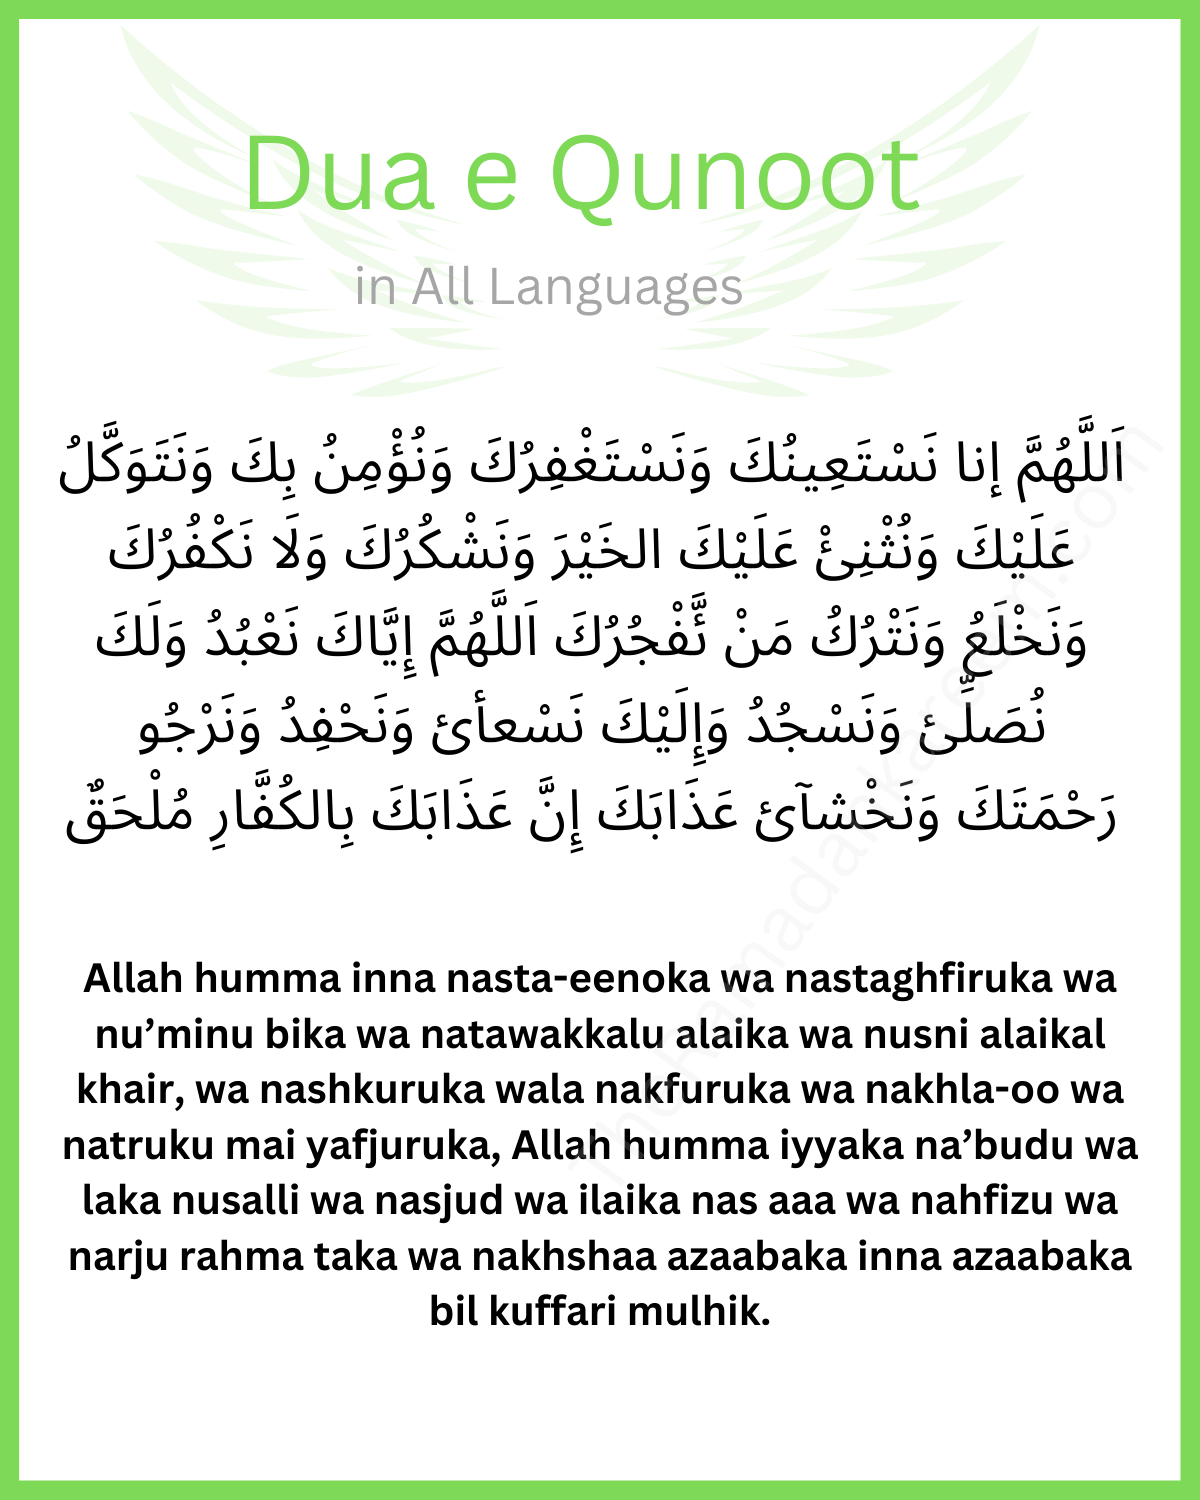 Dua e Qunoot translation in english urdu hindi bangla arabic tarjuma for witr namaz